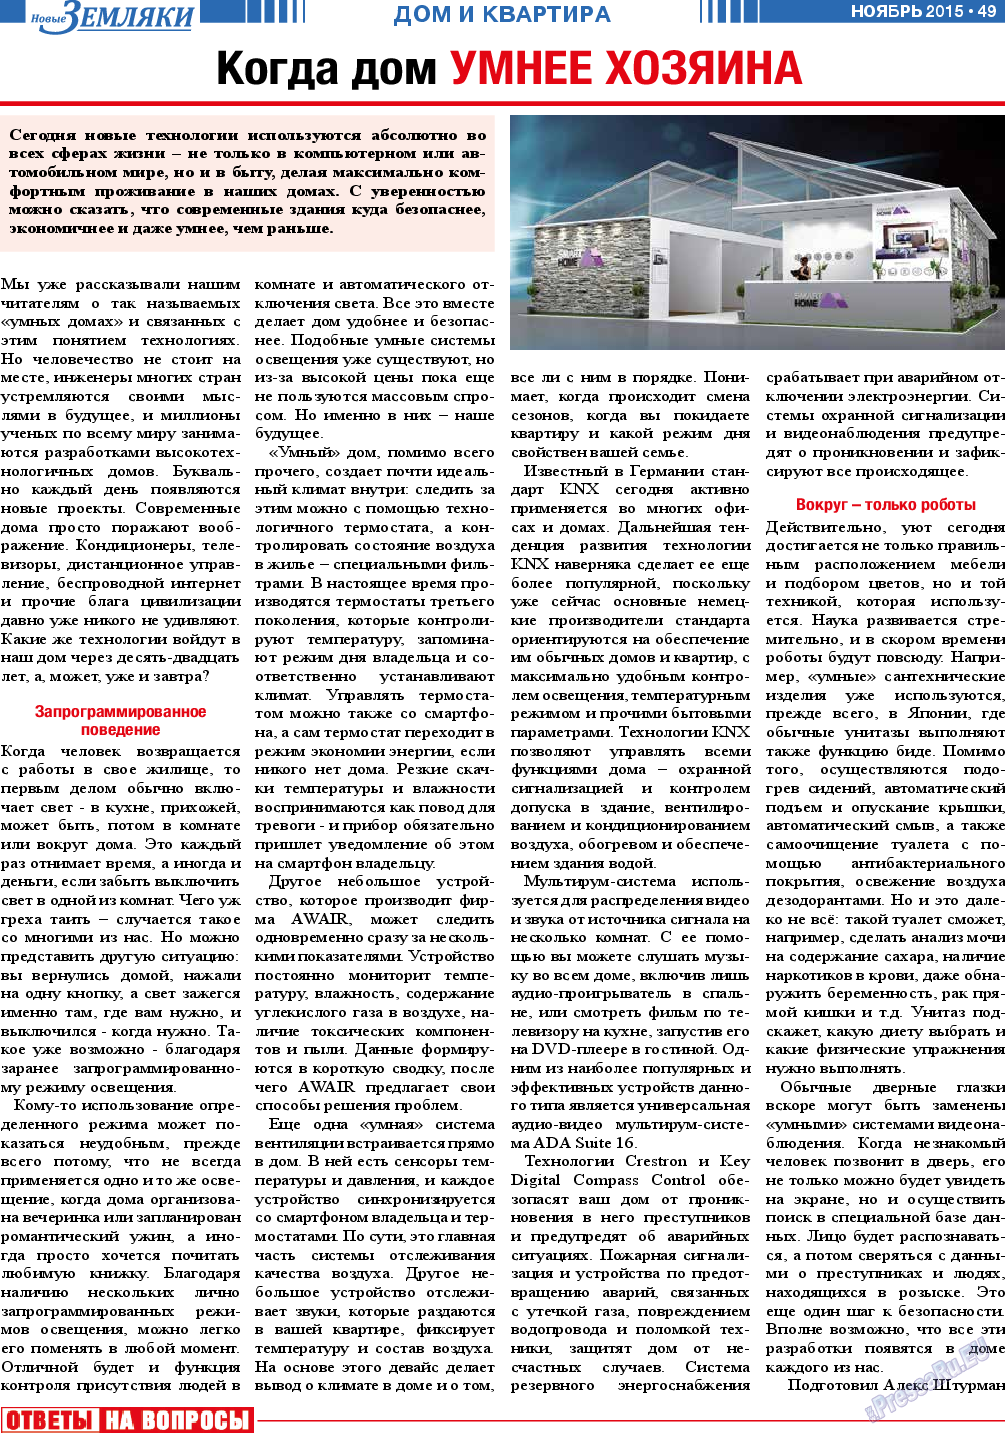 Новые Земляки (газета). 2015 год, номер 11, стр. 49